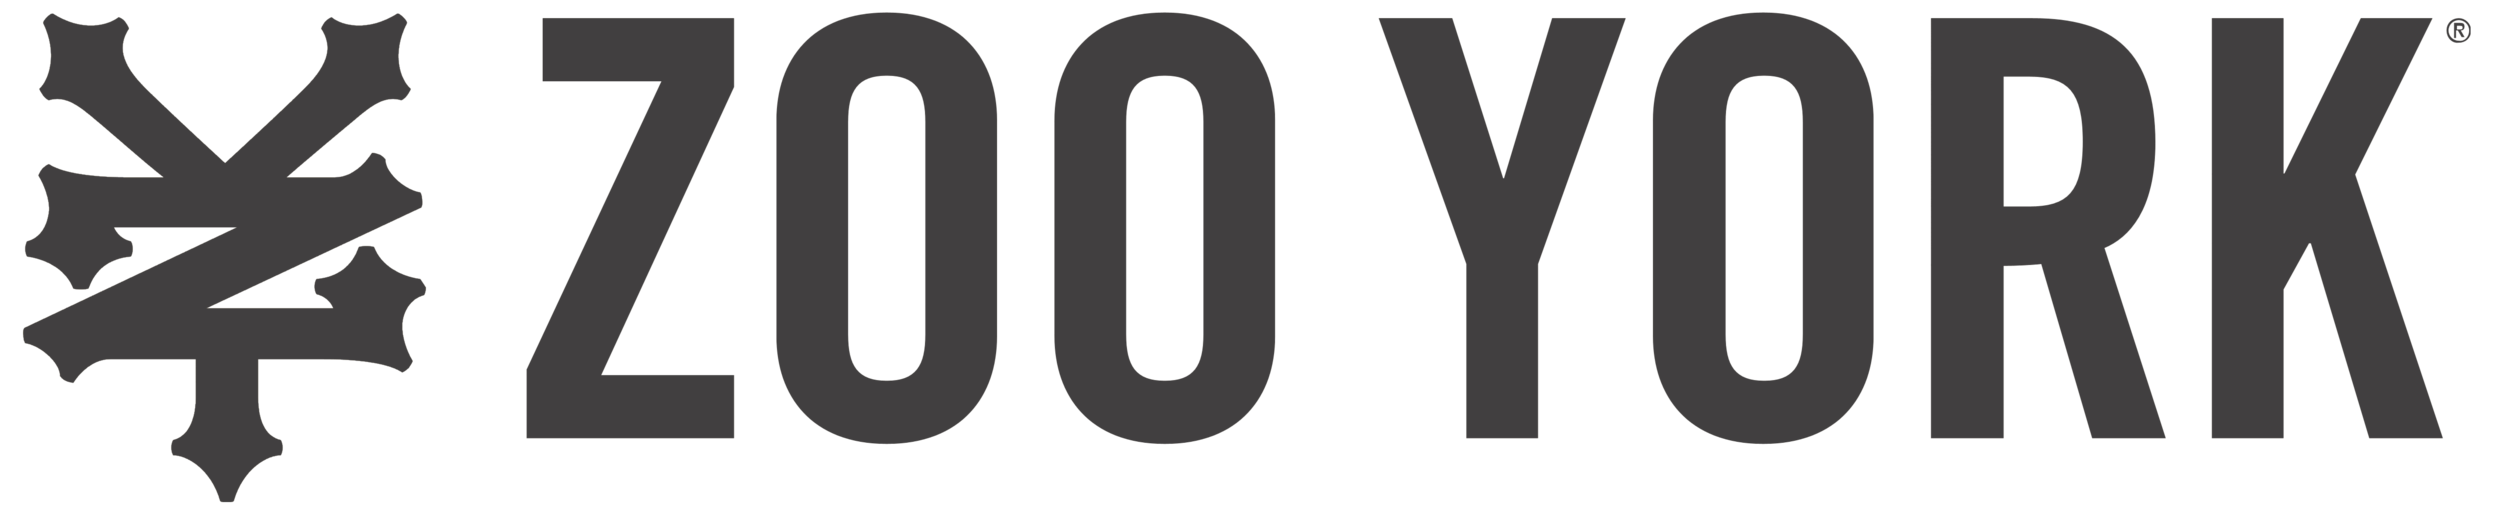 Zoo_York_logo.png